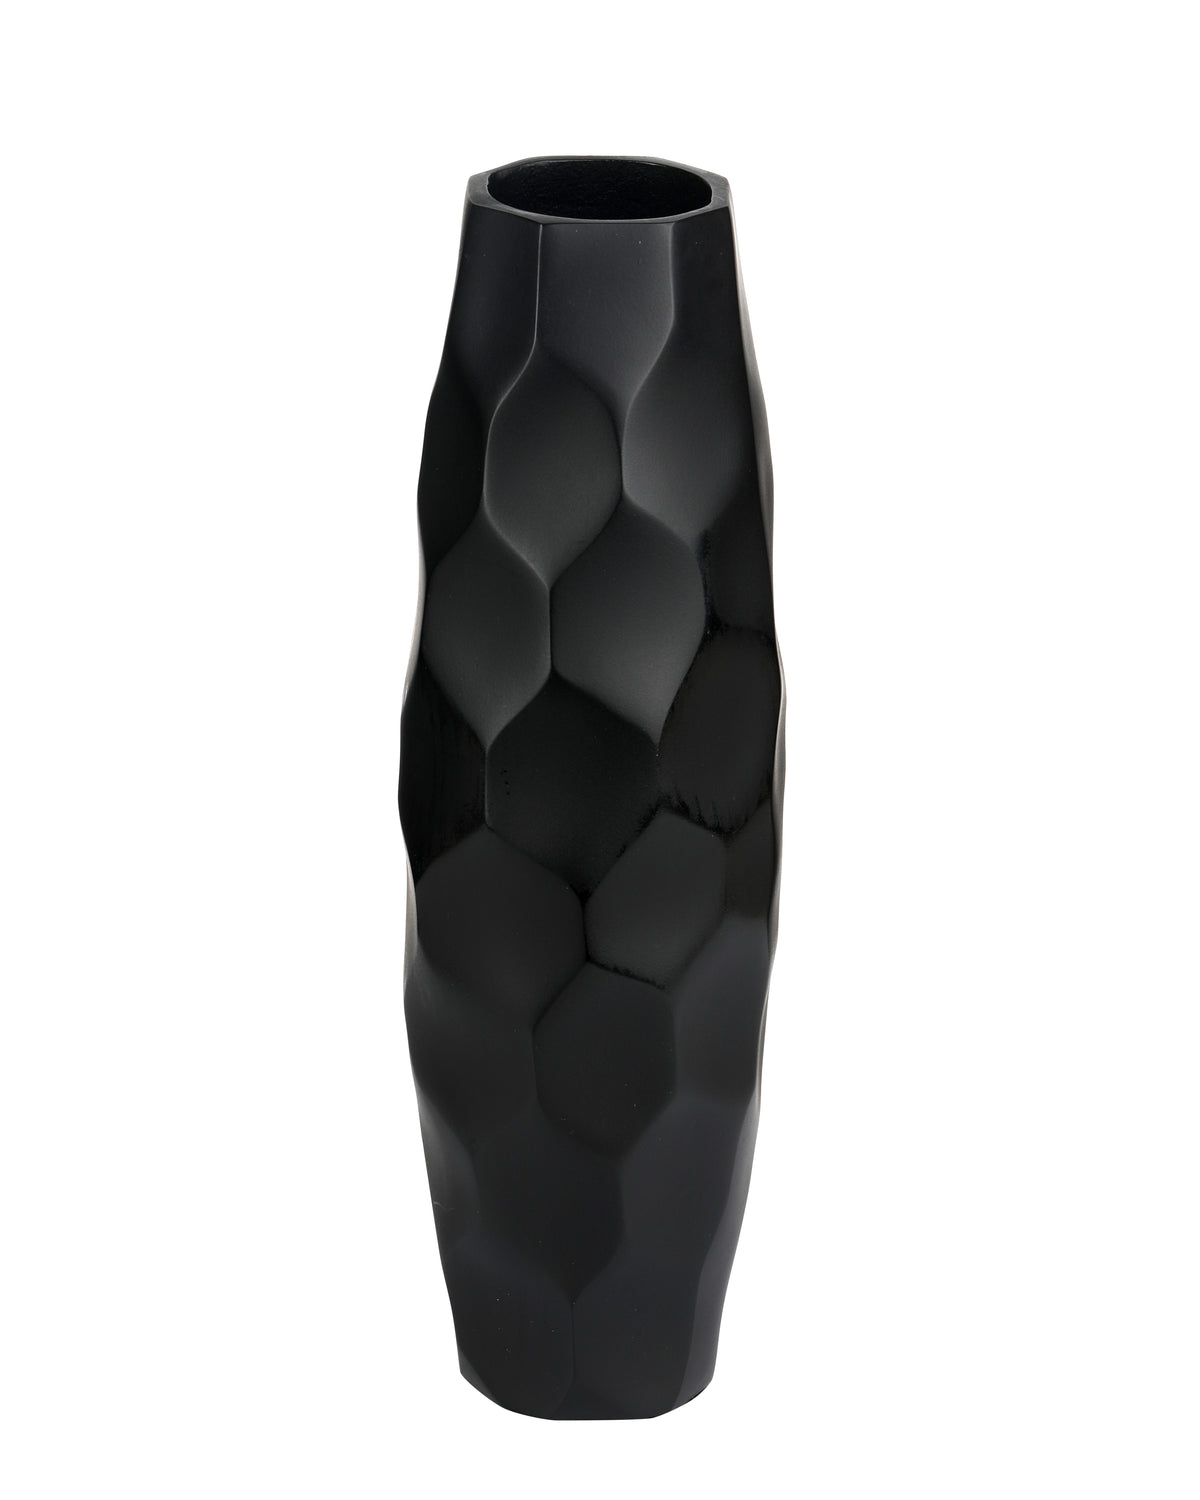 The Black  wave vase